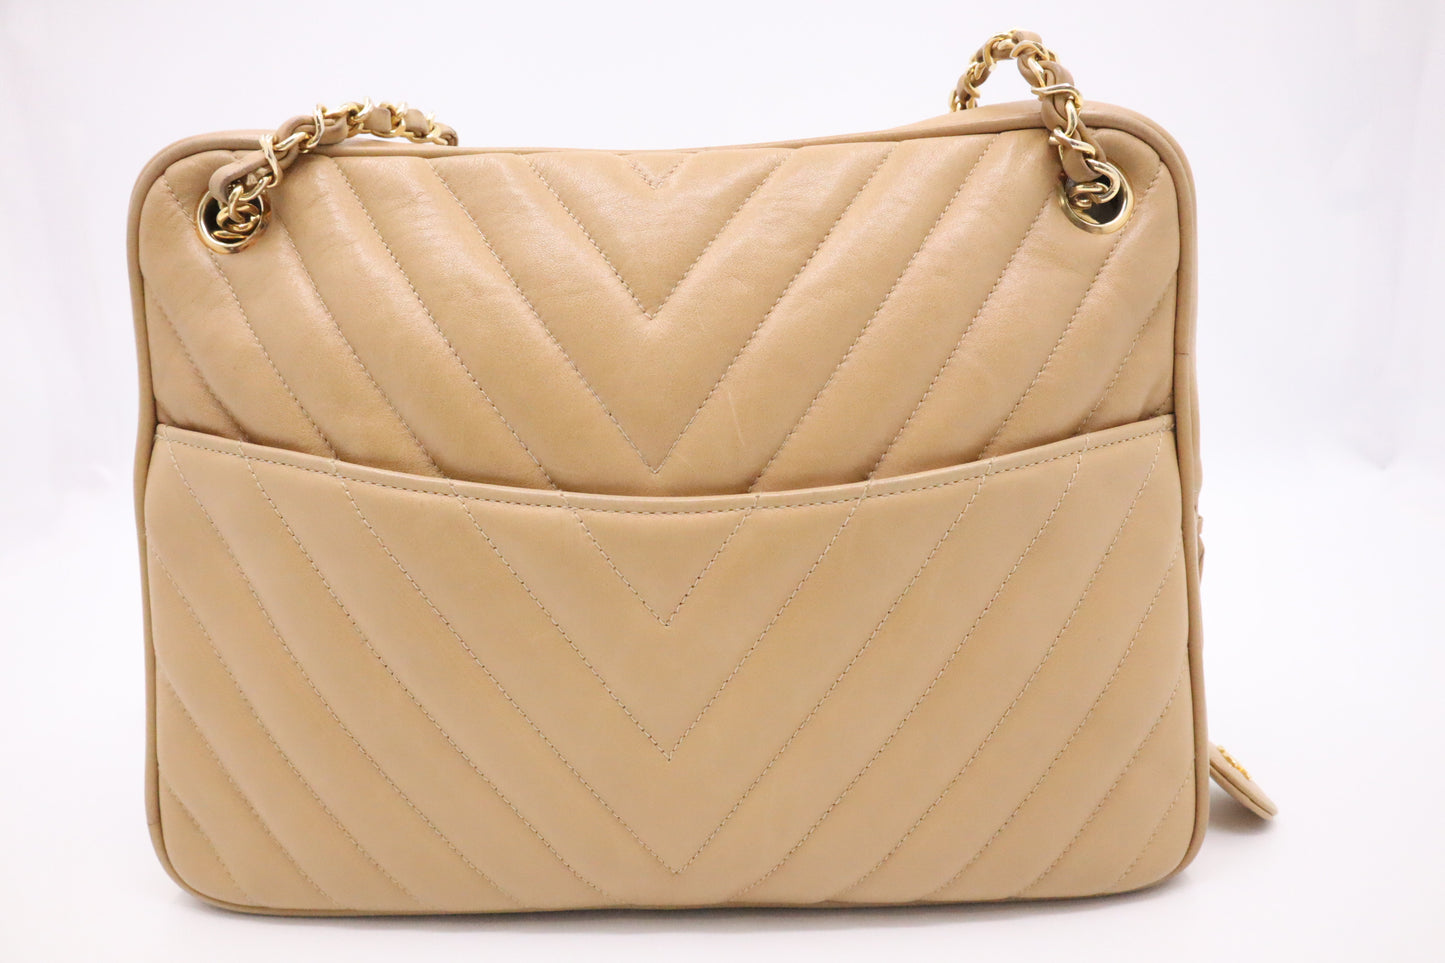 Chanel Shoulder Bag in Beige Leather